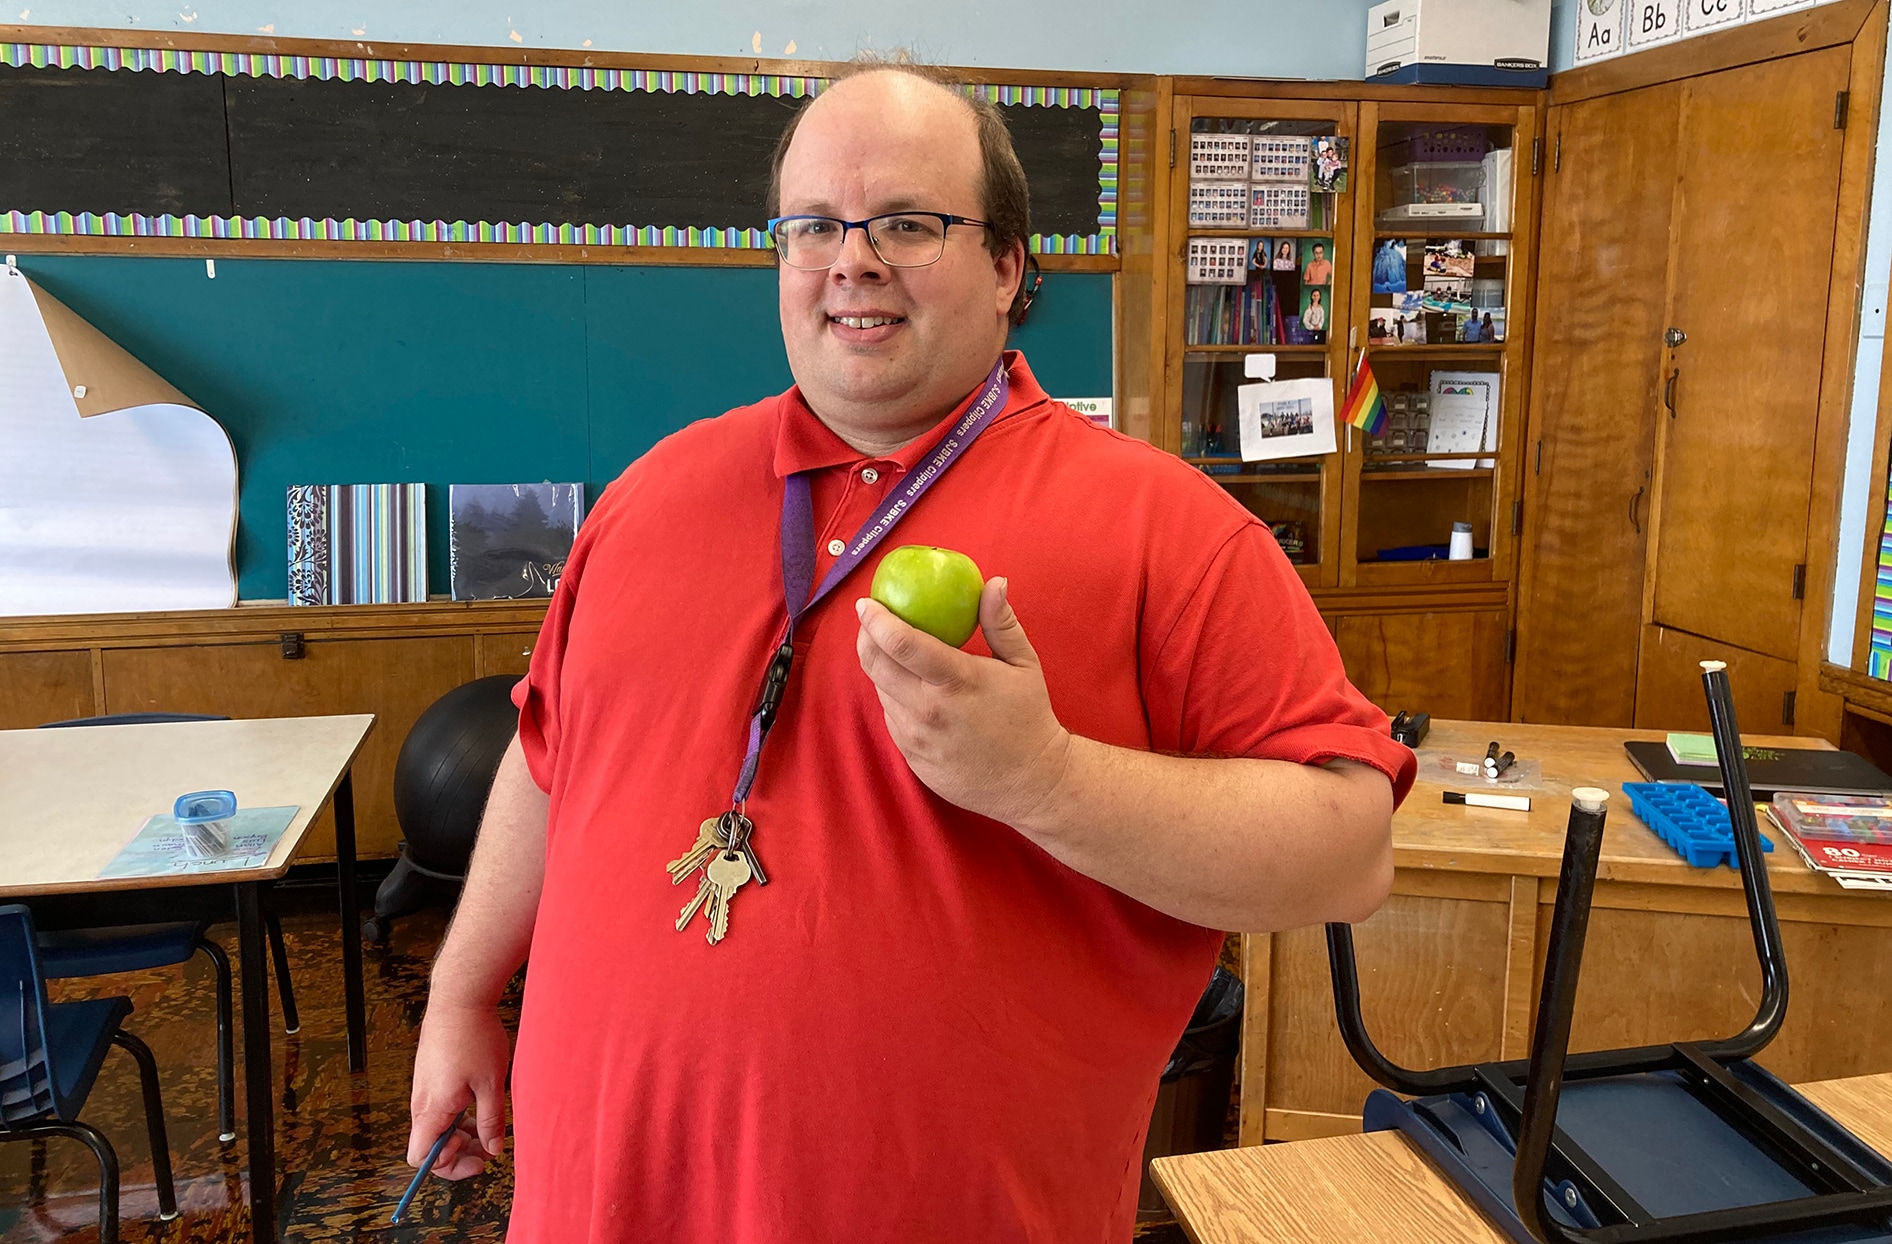 Ben stands inside a classroom inside his school holding an apple.